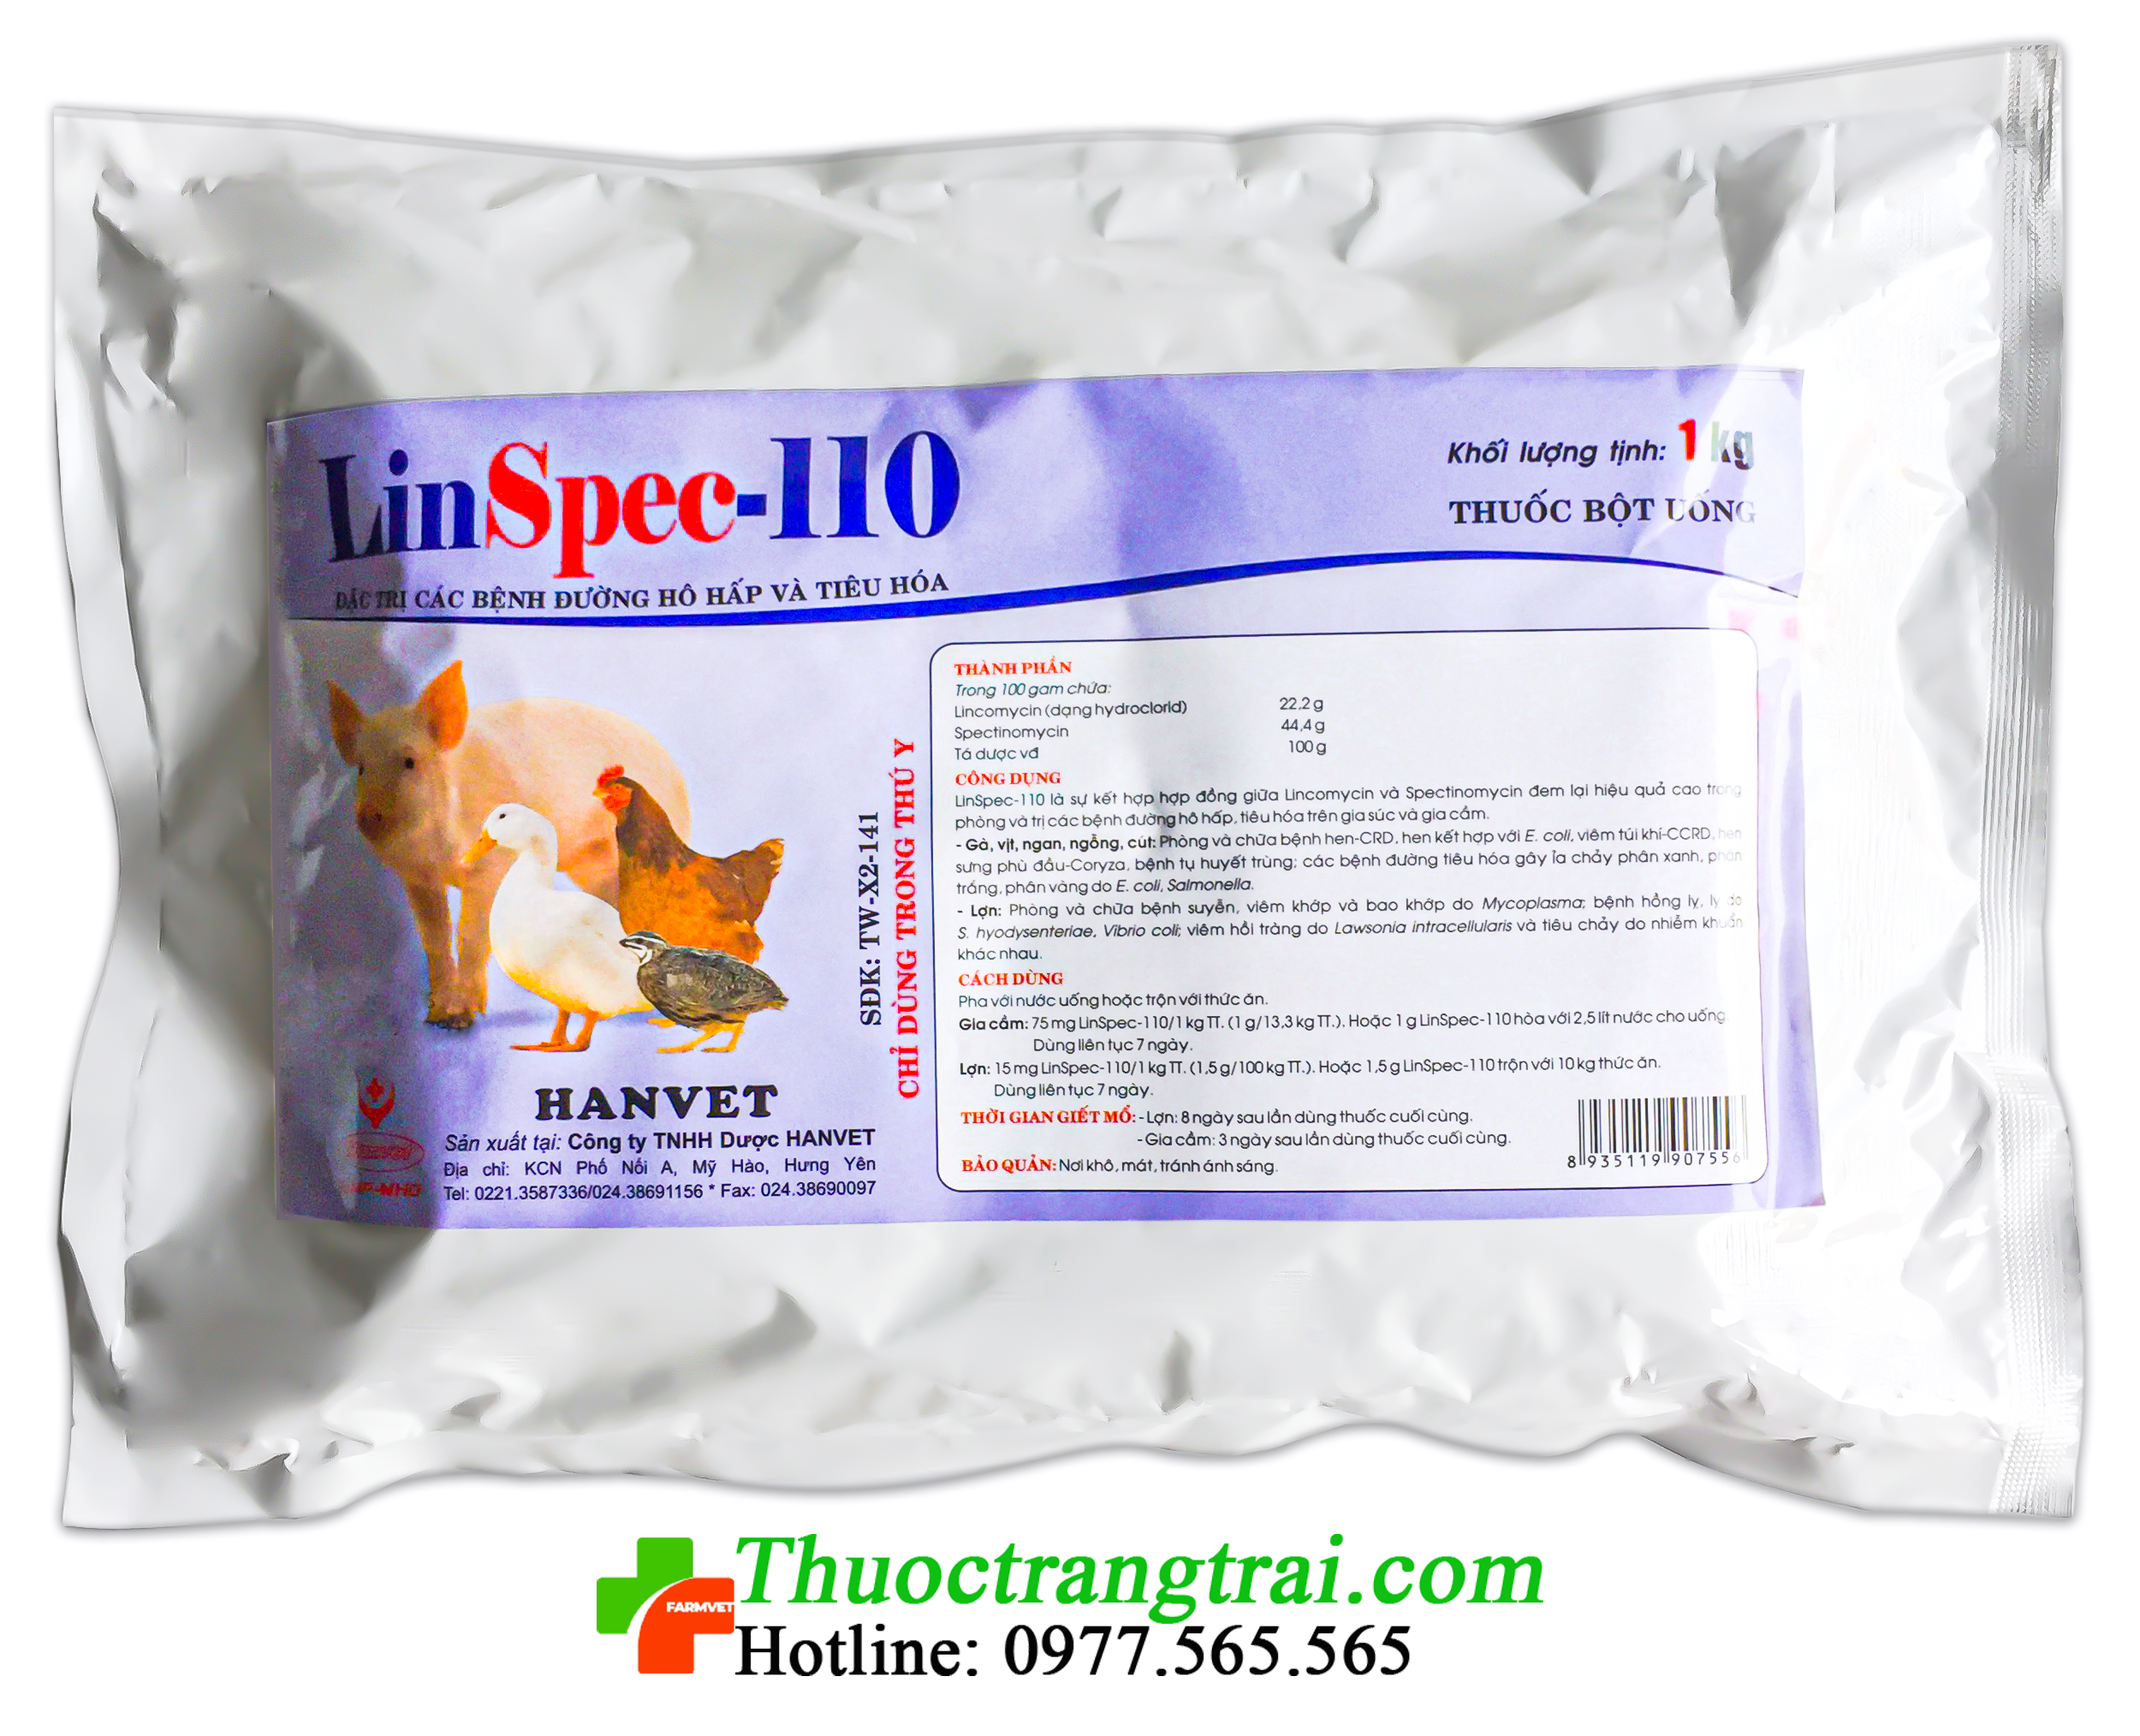 linspec-110-1577075929.png